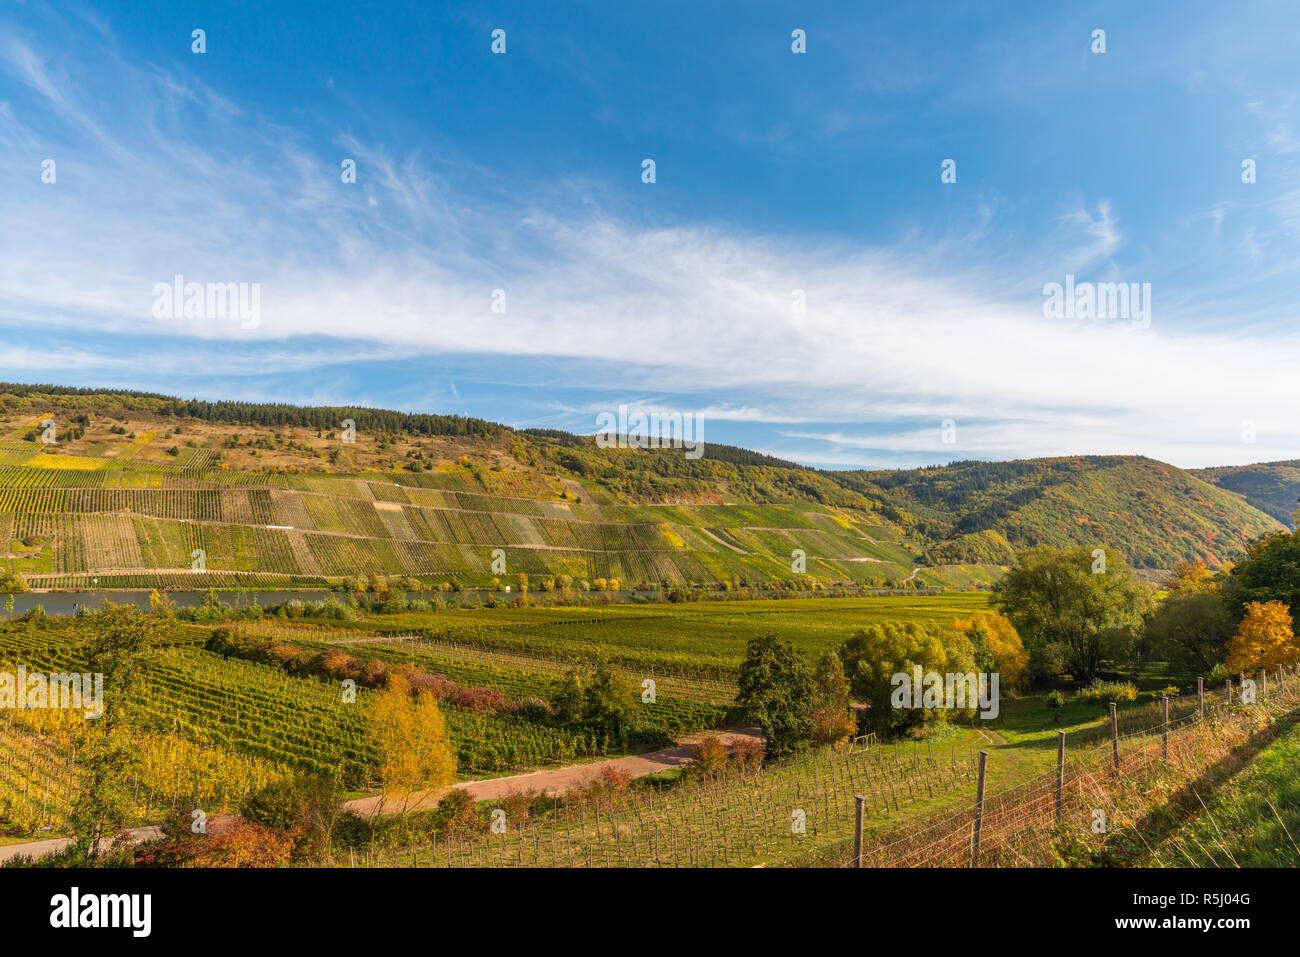 Pölich, paysage avec vignes le long de la Moselle et vallée près du village de Pölich, Rhénanie-Palatinat, Allemagne, Europe Banque D'Images